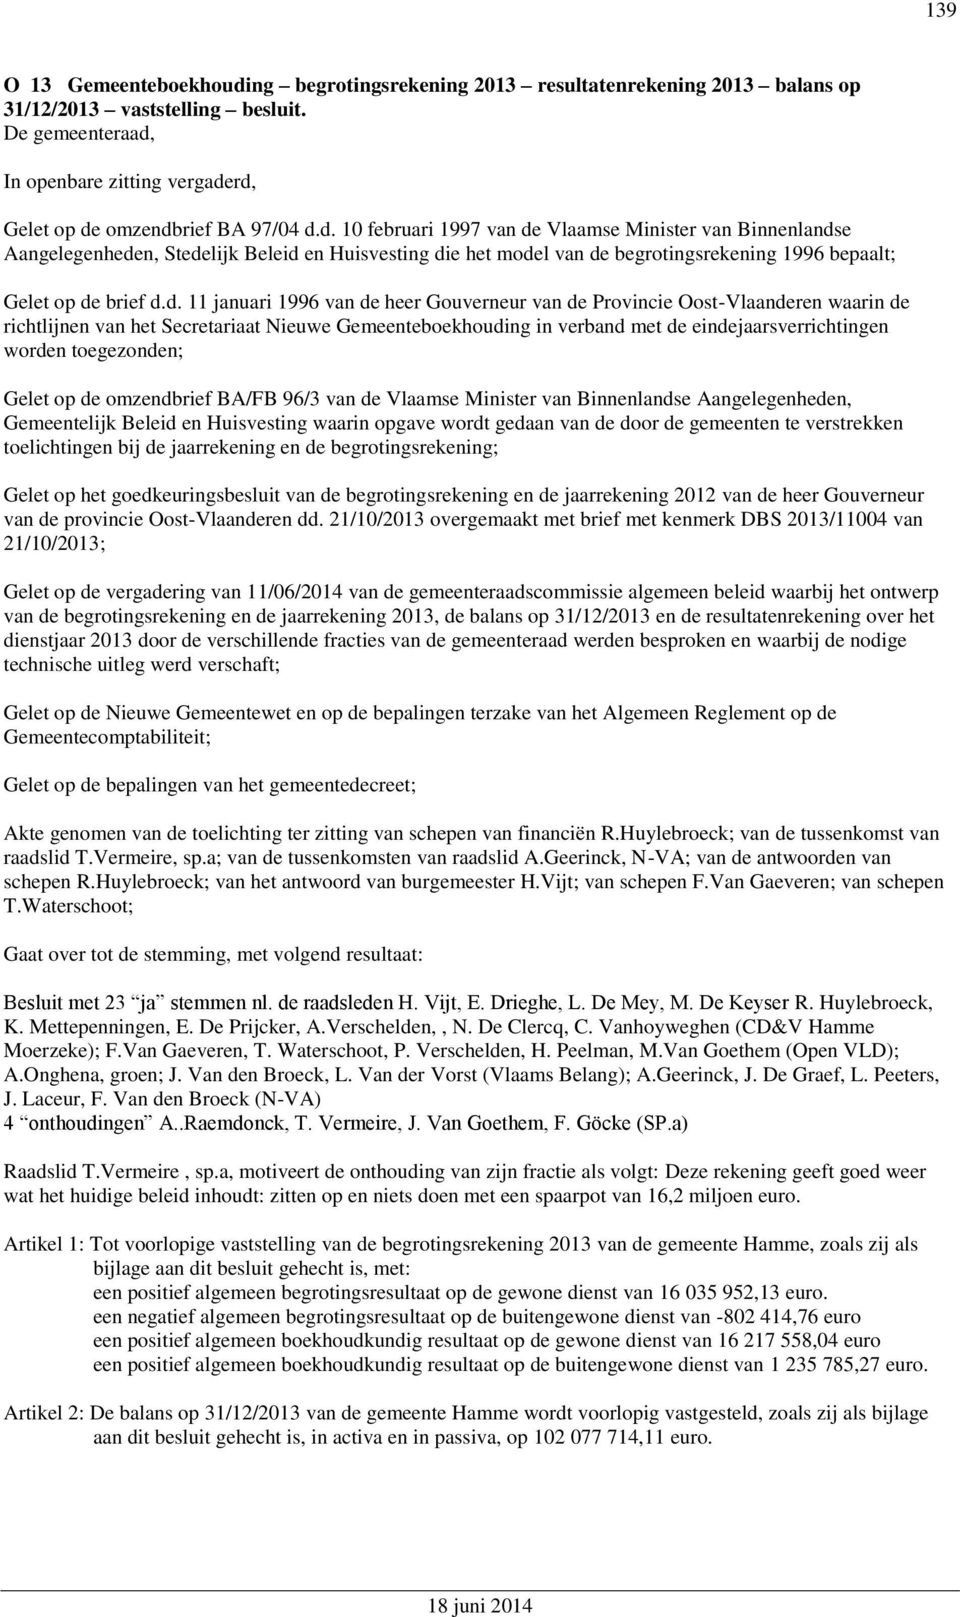 omzendbrief BA 97/04 d.d. 10 februari 1997 van de Vlaamse Minister van Binnenlandse Aangelegenheden, Stedelijk Beleid en Huisvesting die het model van de begrotingsrekening 1996 bepaalt; Gelet op de brief d.